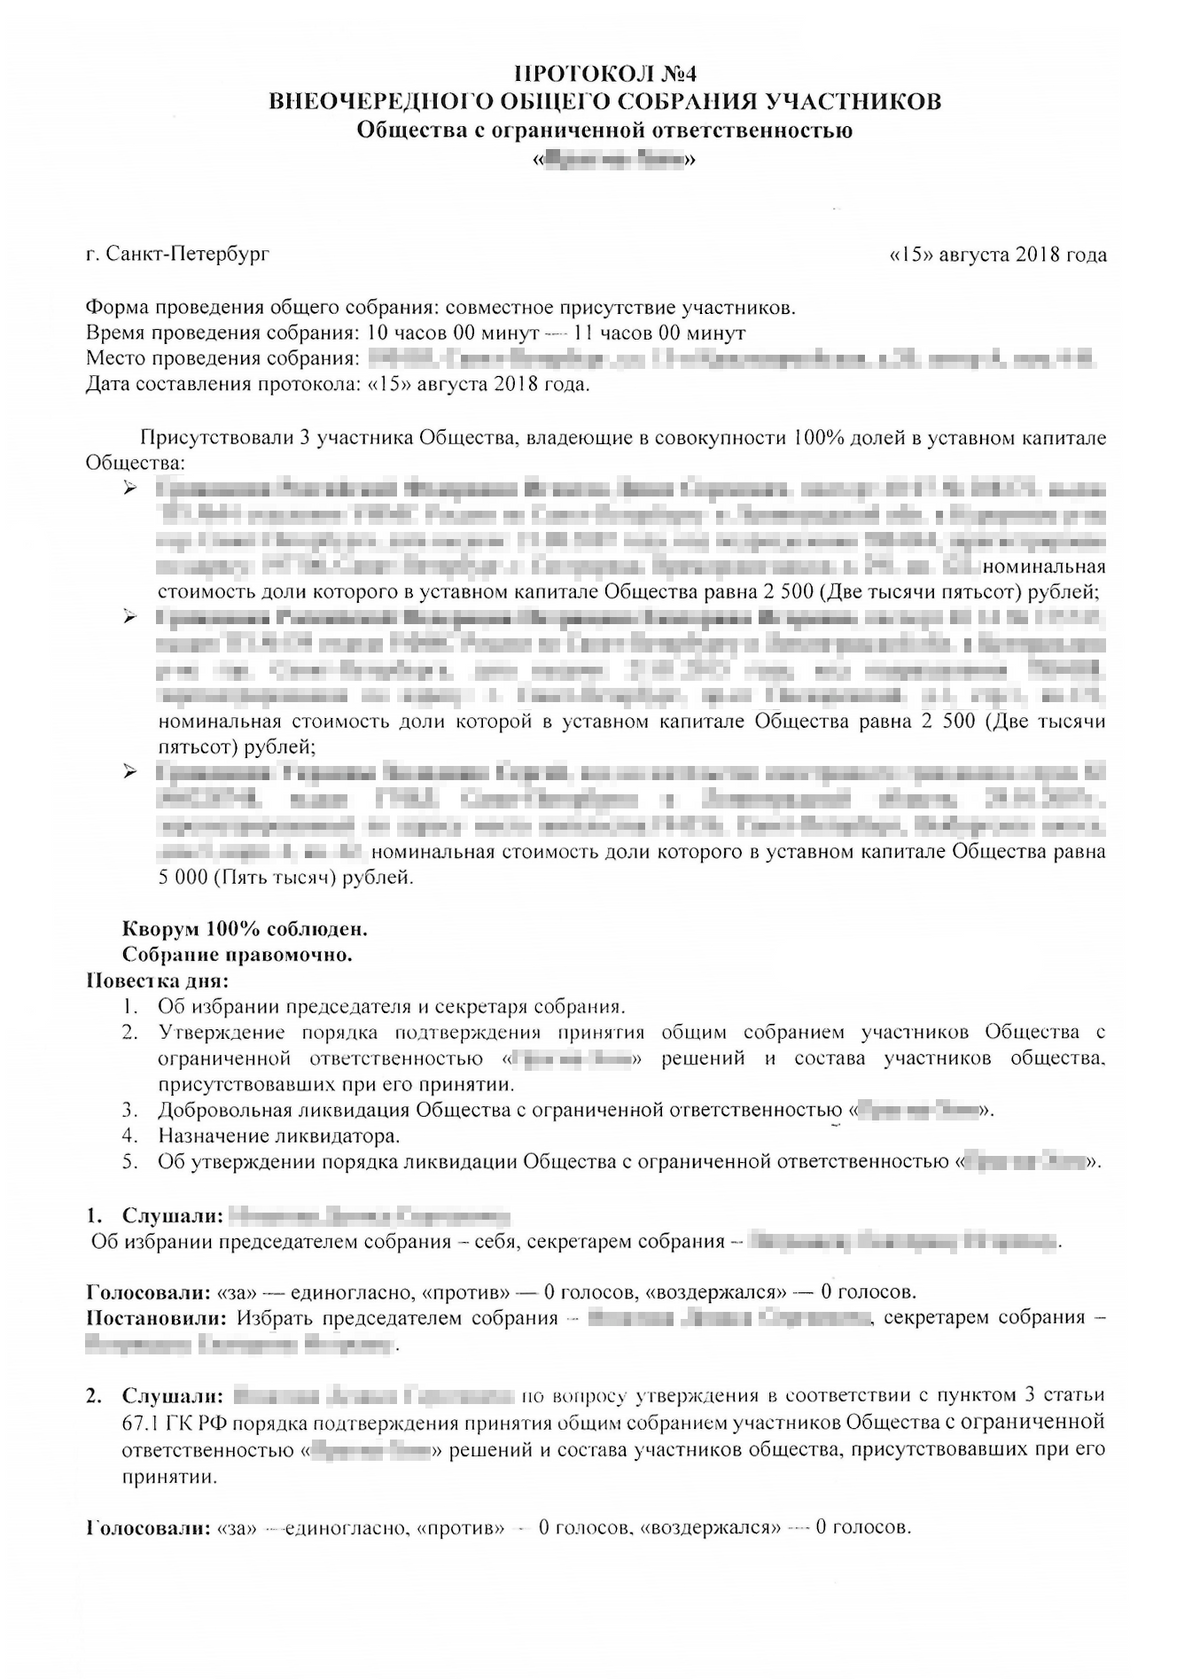 Ликвидация ООО от 25 тыс. ₽Без налогового контроля